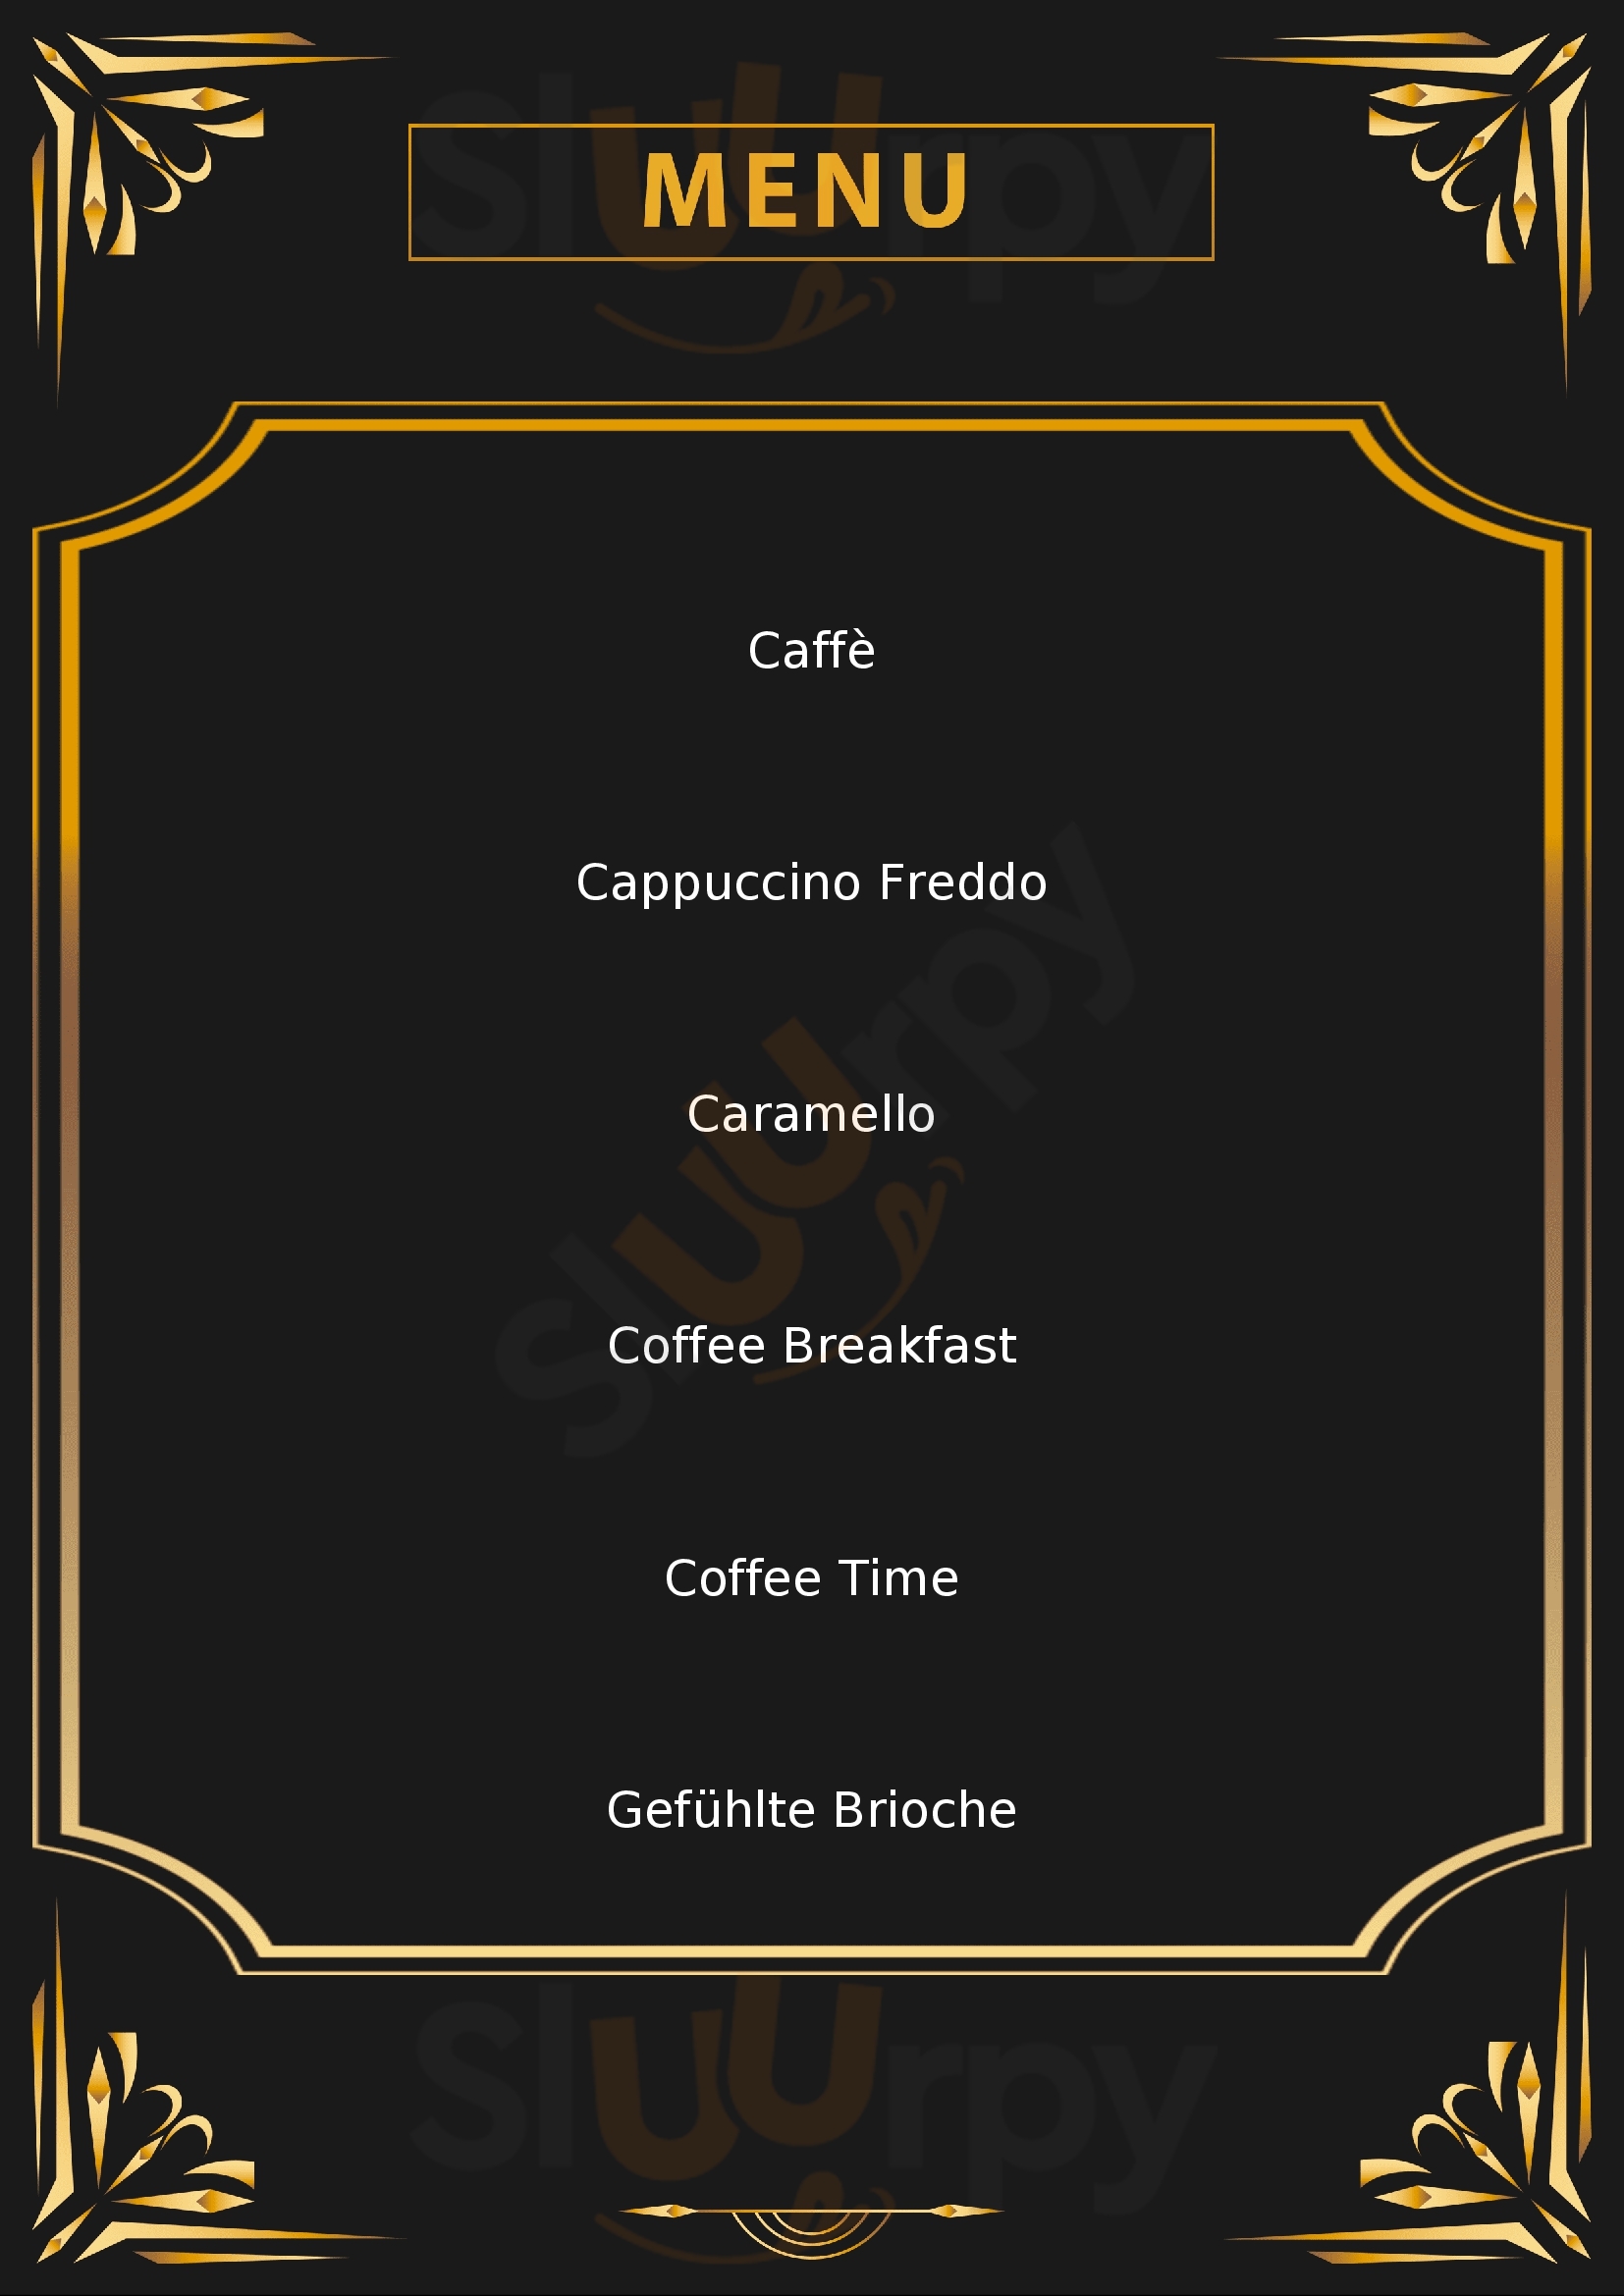 Caffé Rocca Milano menù 1 pagina